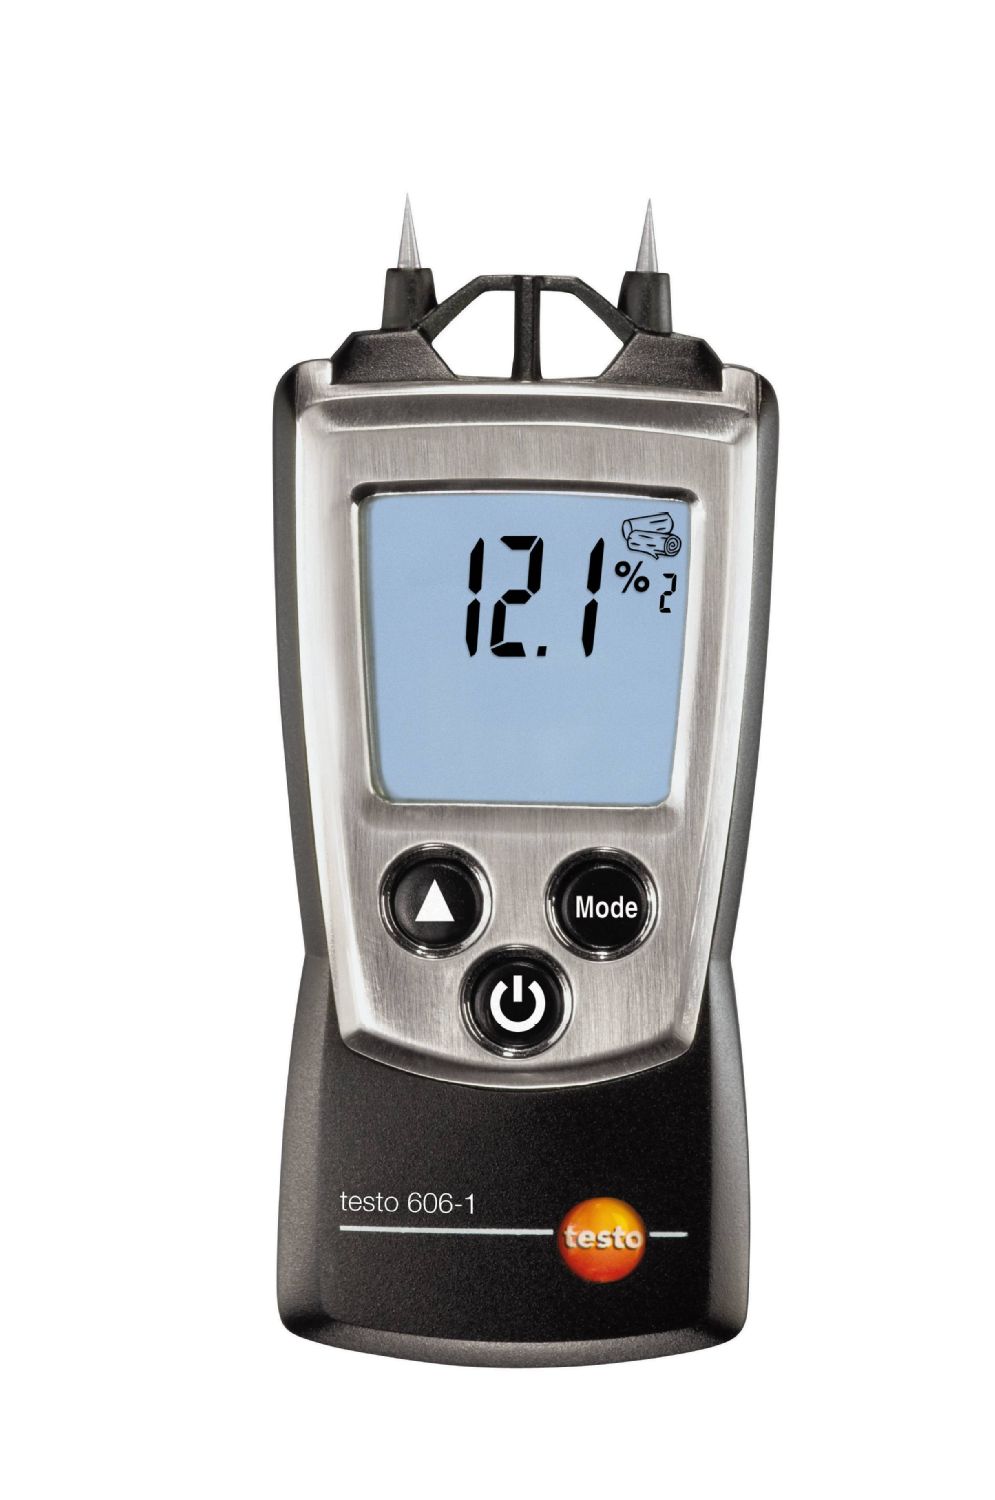 TESTO 606-1 - Pocket sized Moisture meter for material moisture